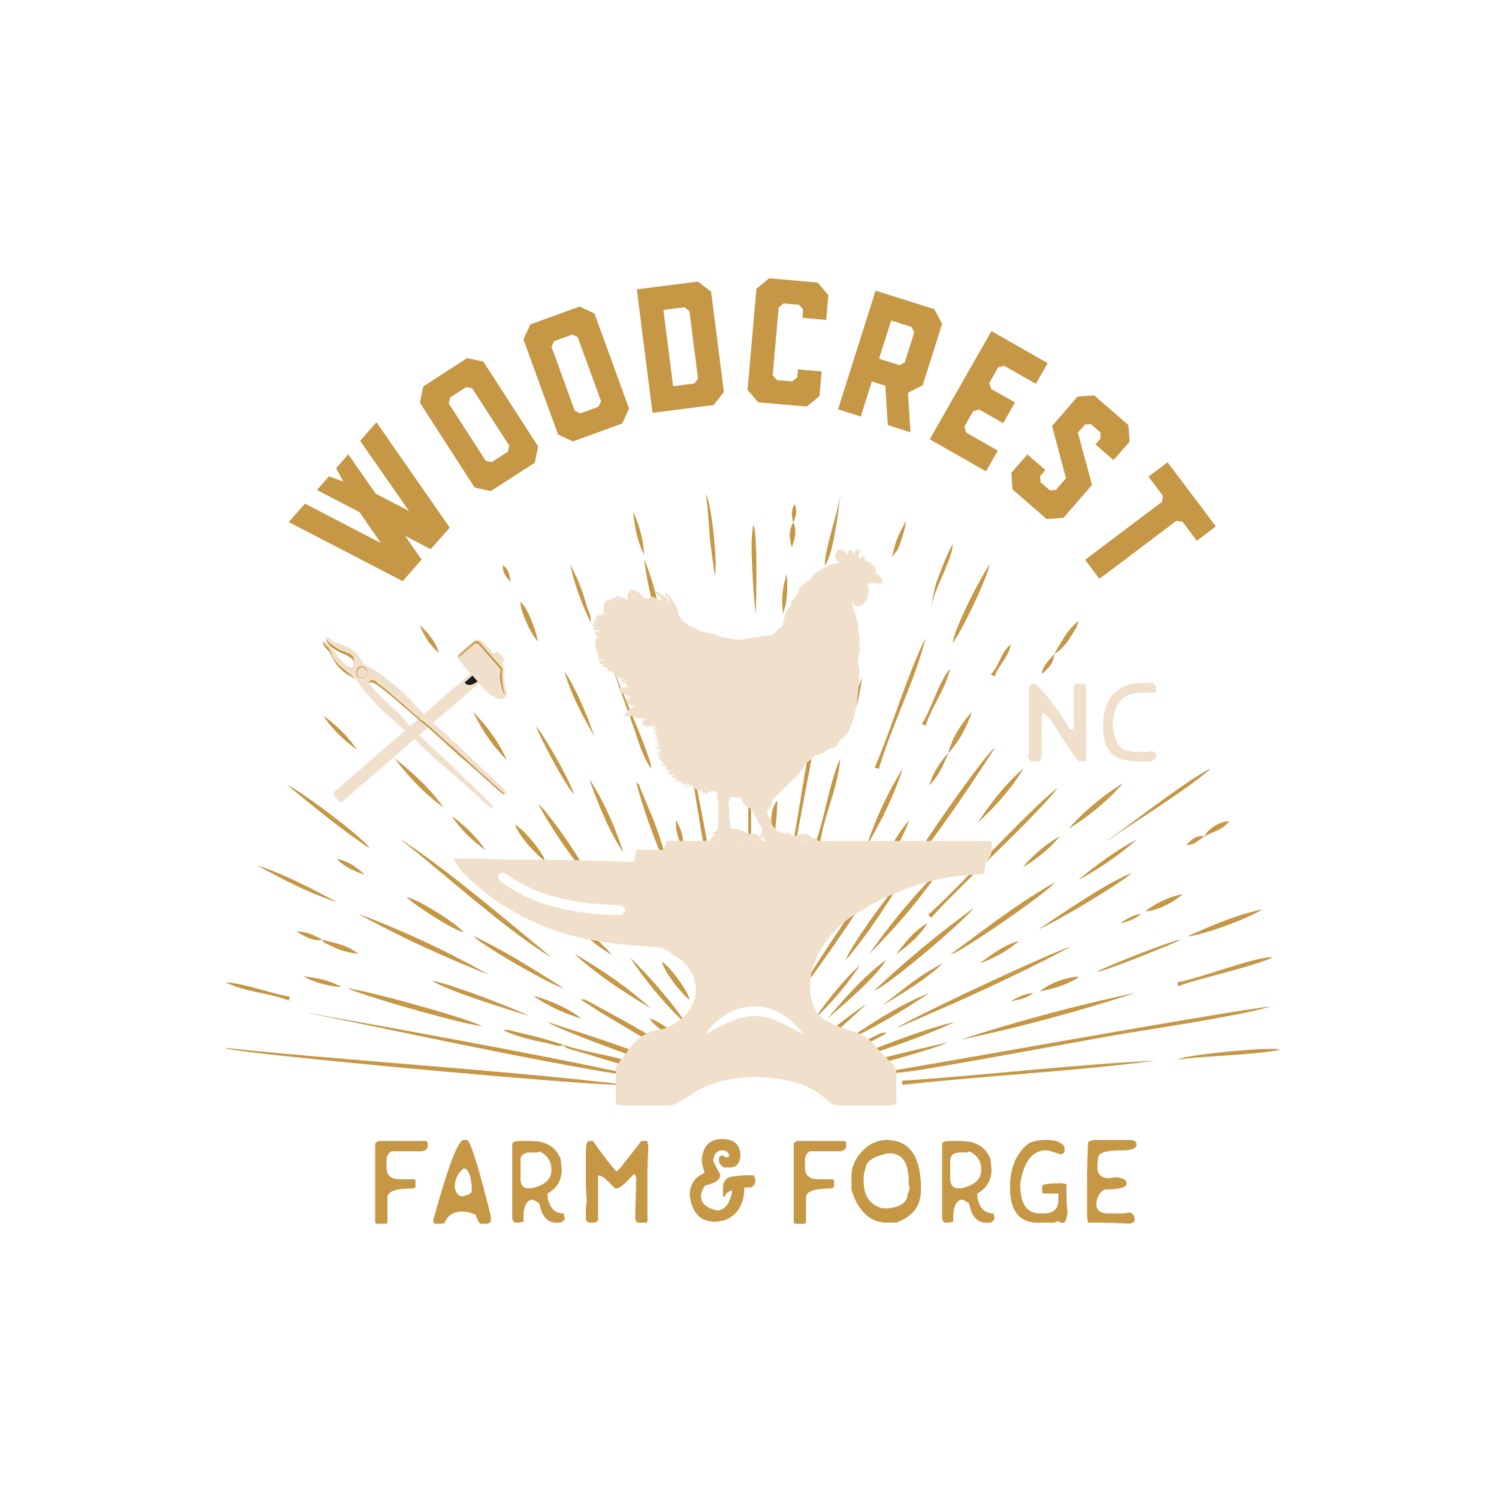 www.woodcrestfarmnc.com